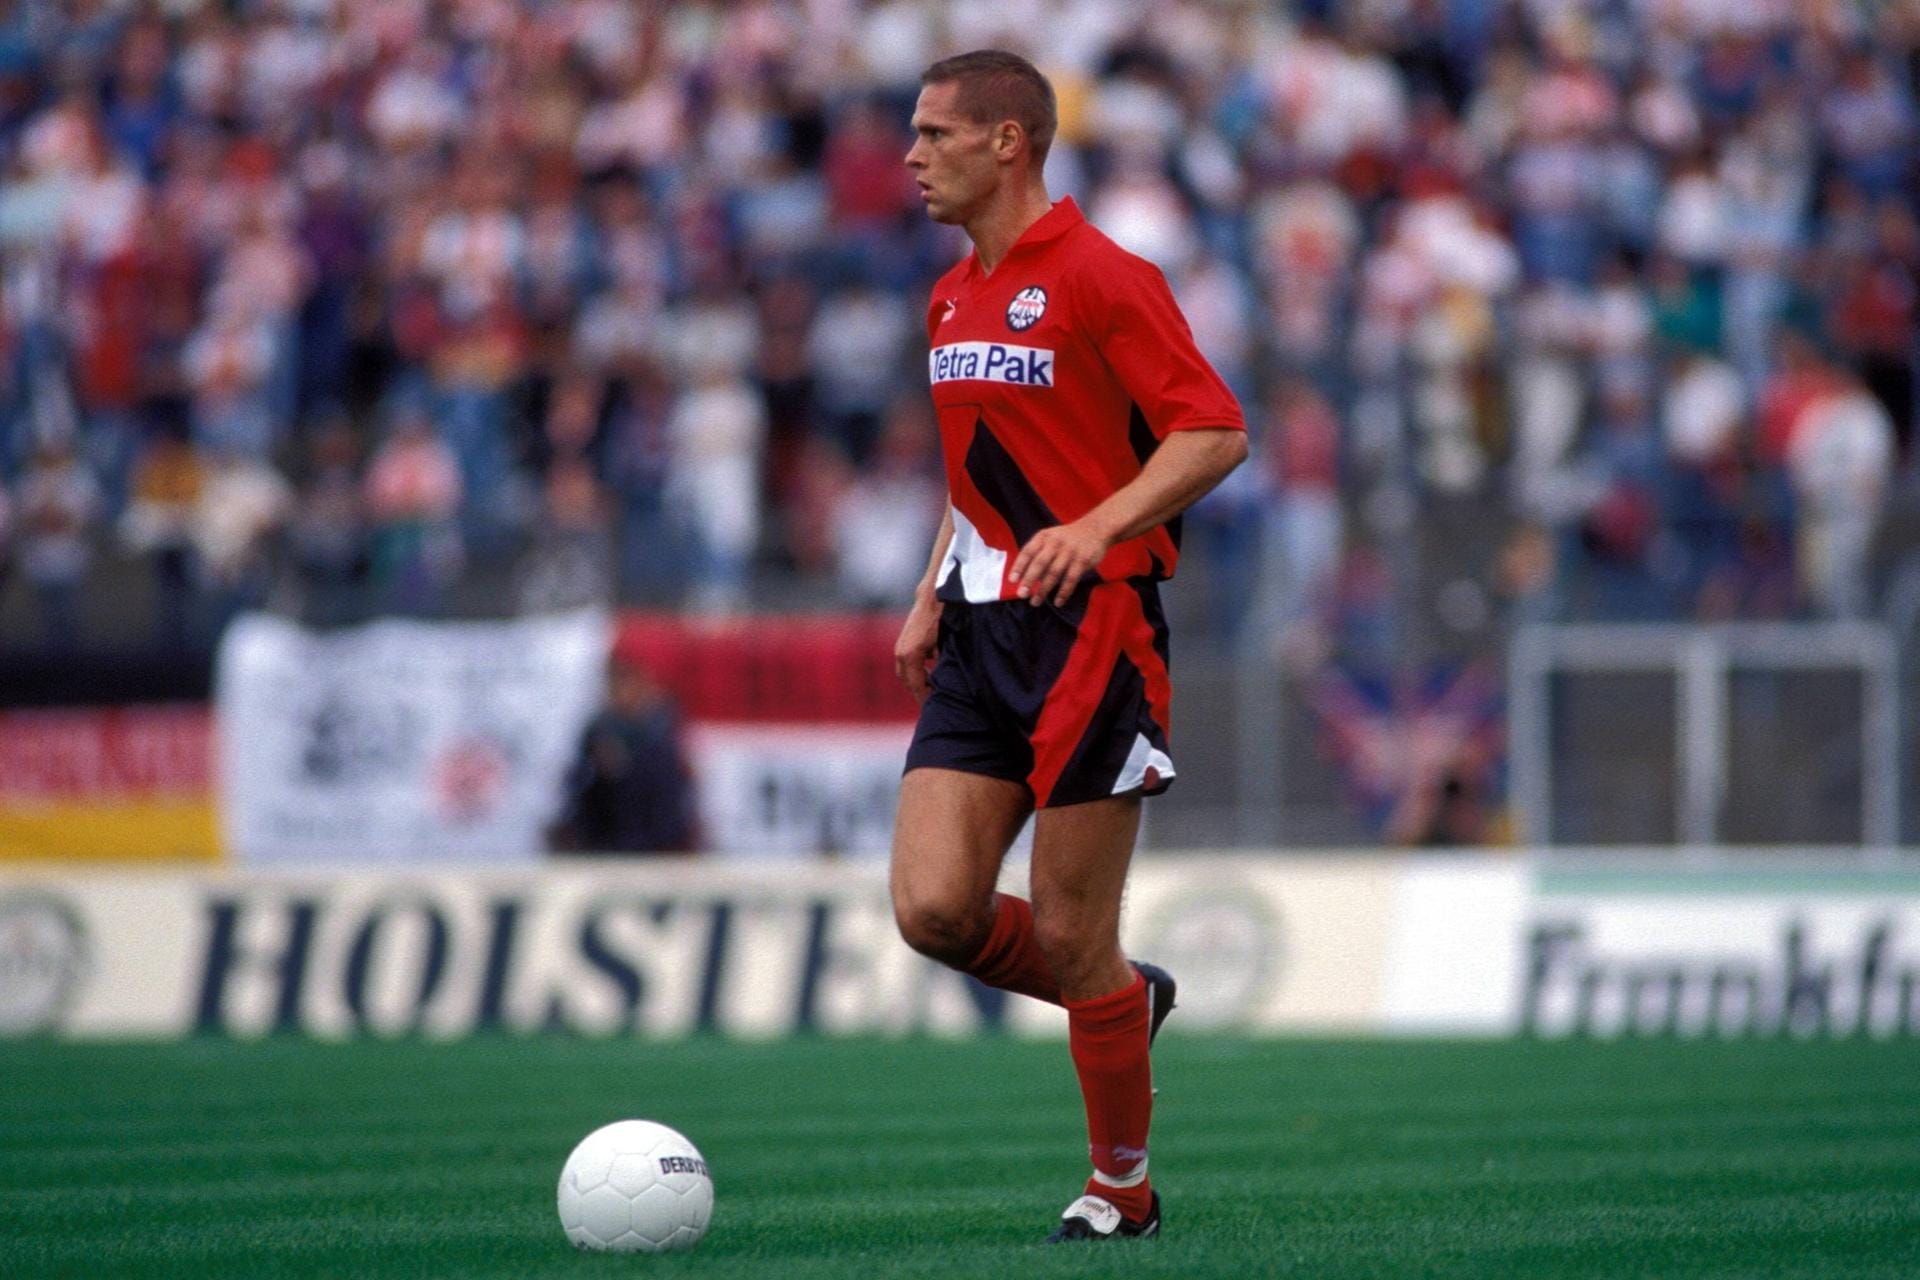 Thorsten Legat (1994-1995): Vor seiner Karriere bei Stuttgart und Schalke spielte er eine Saison im Trikot der Adler. Als Mittelfeldroutinier kam er von Werder Bremen zu den Hessen. Nach seinem verletzungsbedingten Karriereende 2001 auf Schalke war er immer wieder mal Trainer, ist aber auch durch seine prominenten TV-Auftritte bekannt.